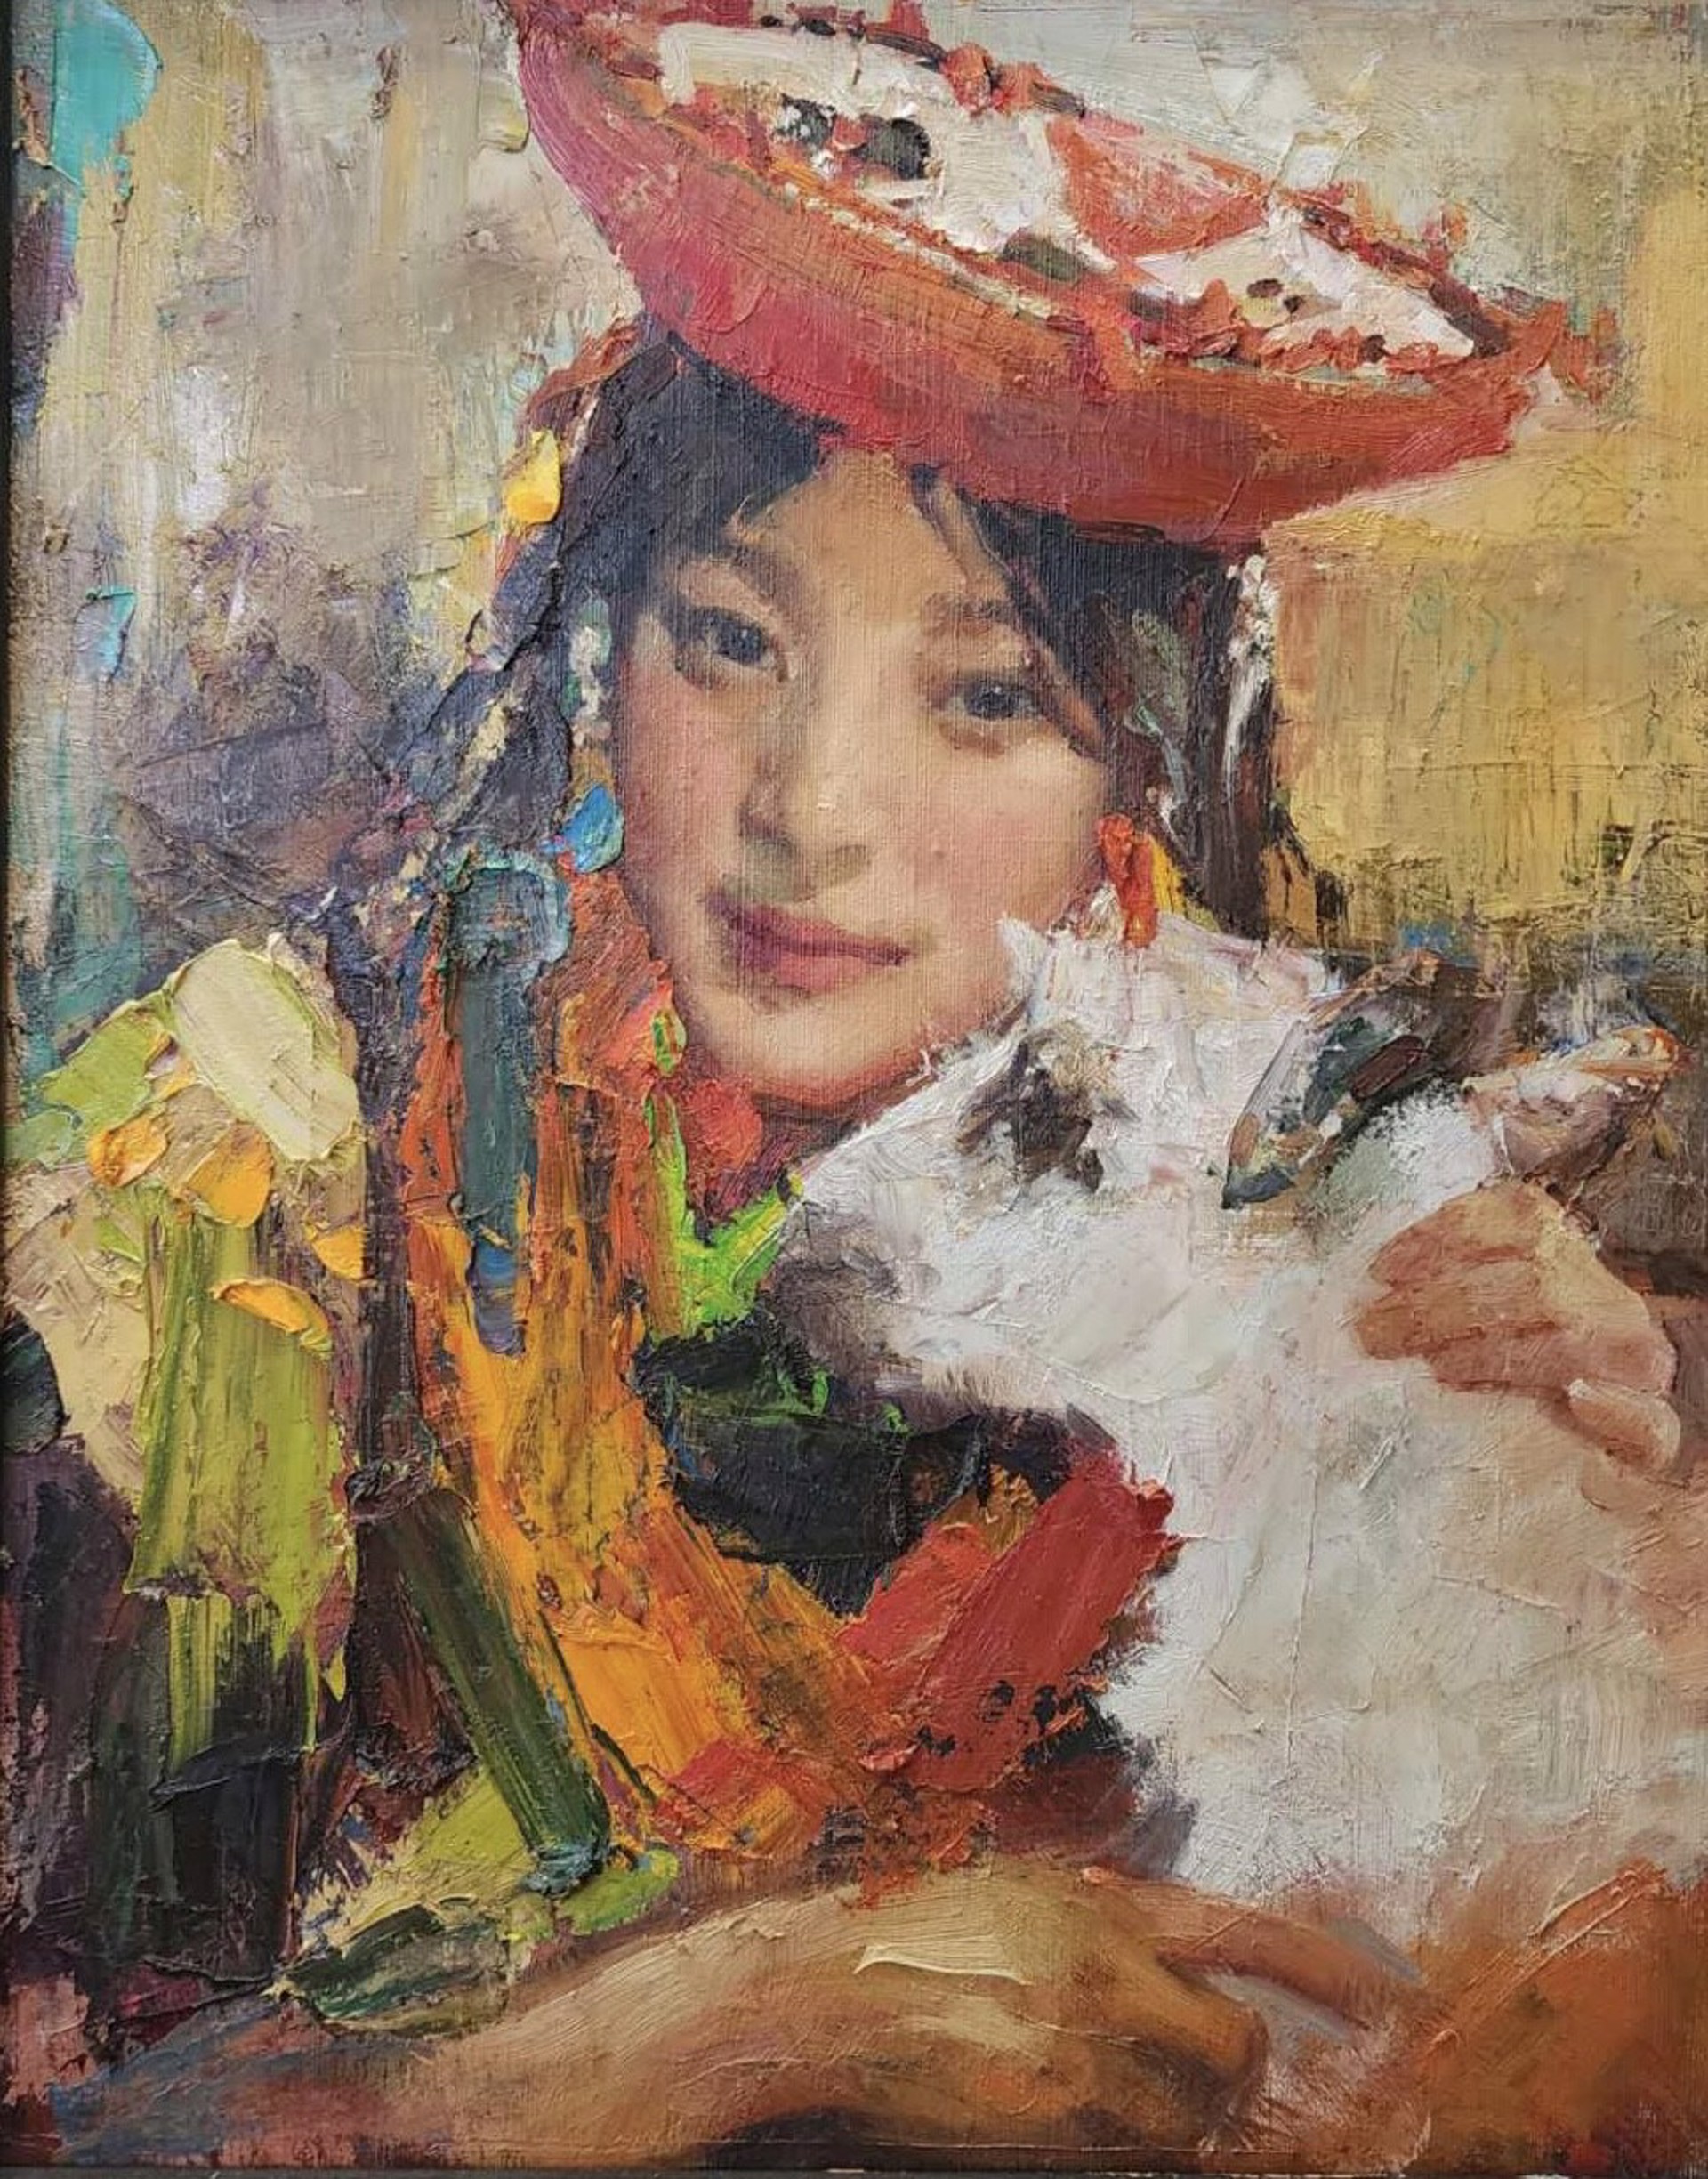 Young Tibetan Girl by Piao Xue Cheng